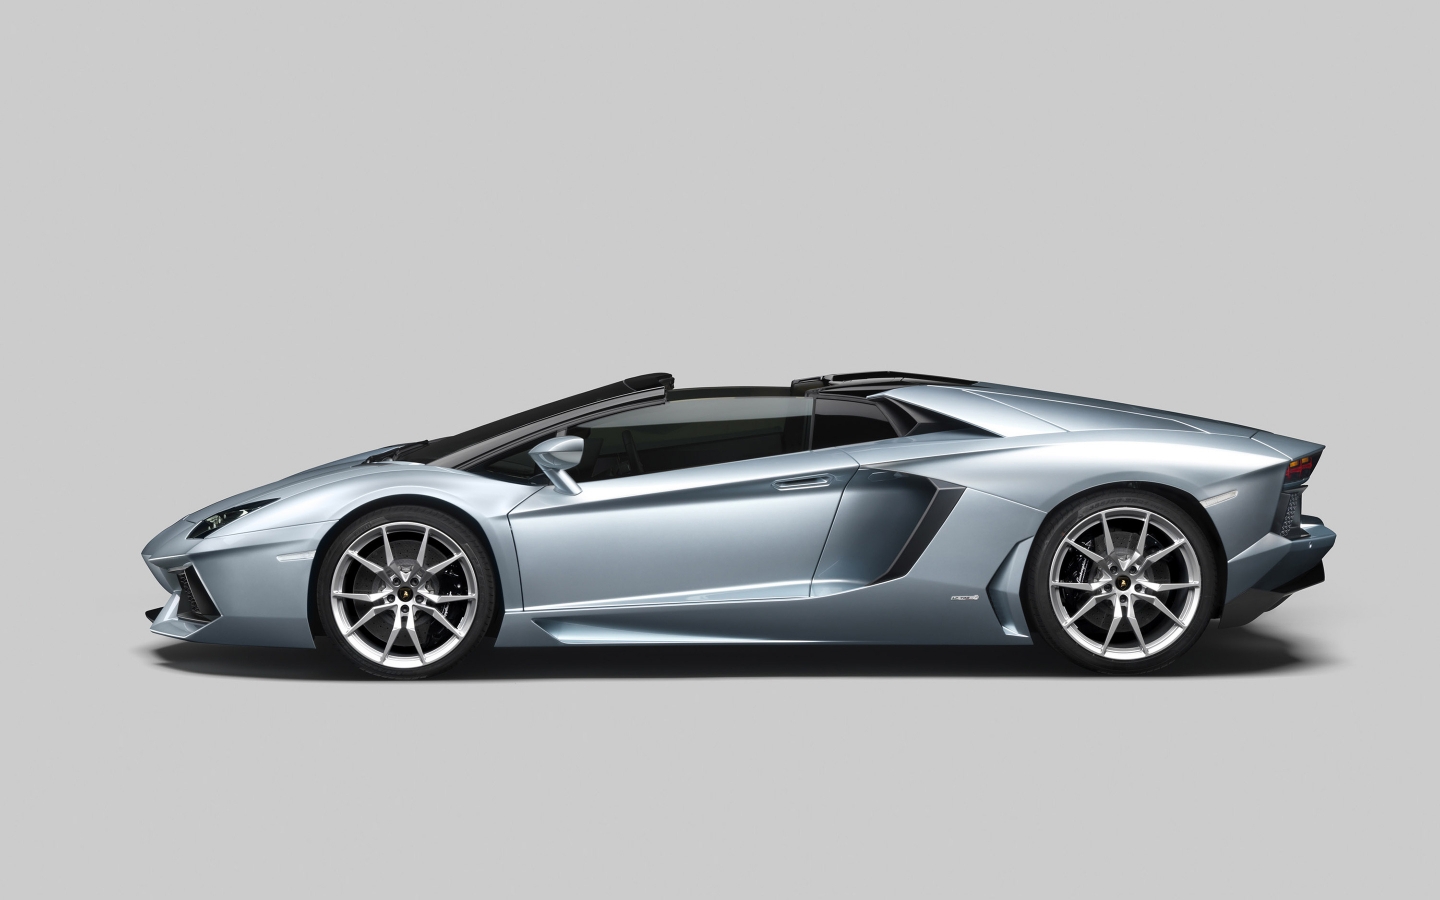 Lamborghini Aventador LP 700 for 1440 x 900 widescreen resolution